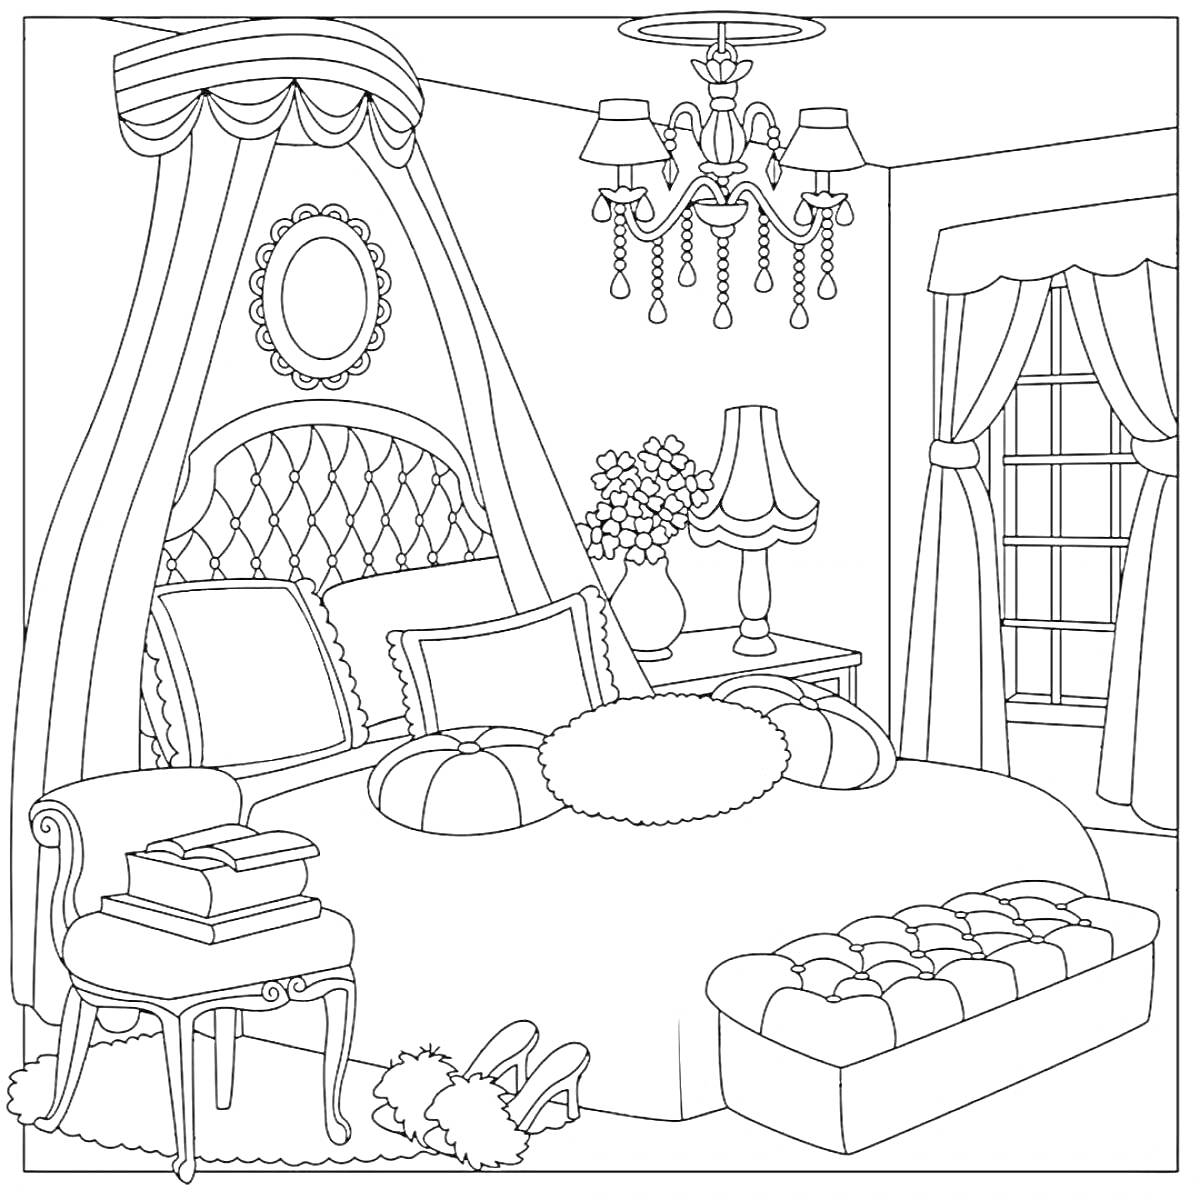 Раскраска Спальня кукол ЛОЛ с кроватью, балдахином, подушками, торшером, пуфиком, занавесками и обраткой